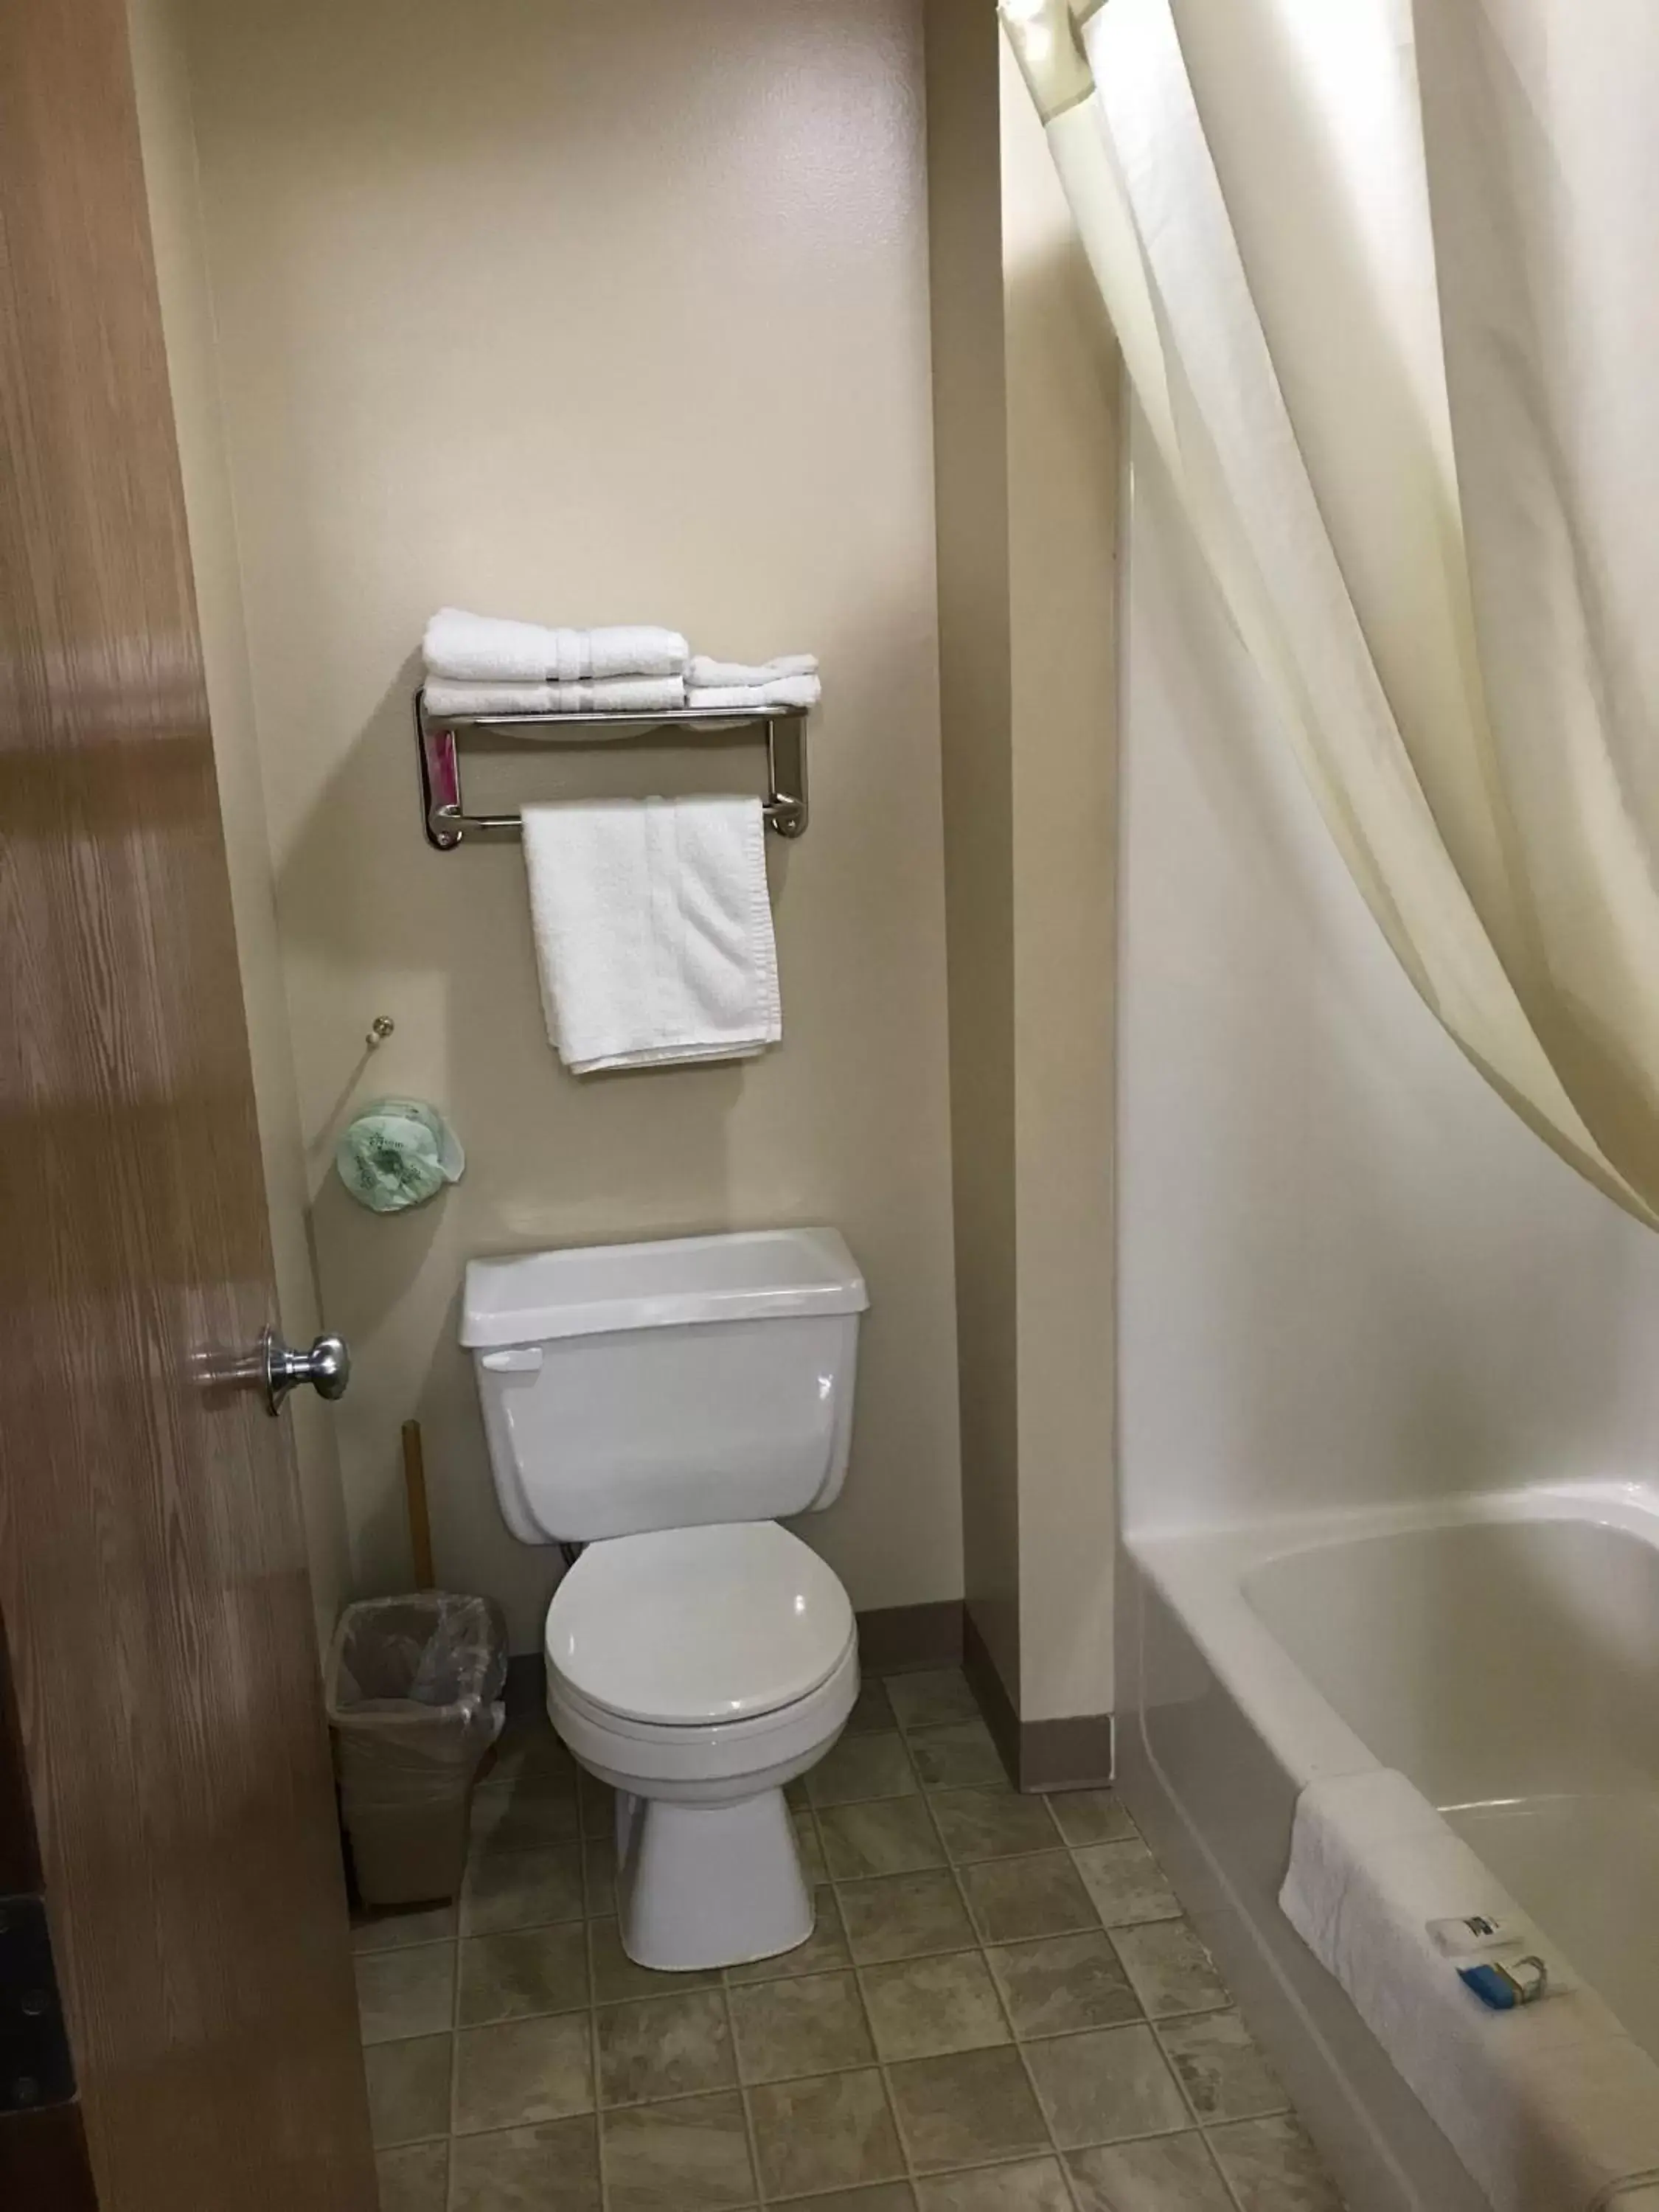 Toilet, Bathroom in Heartland Hotel & Suites